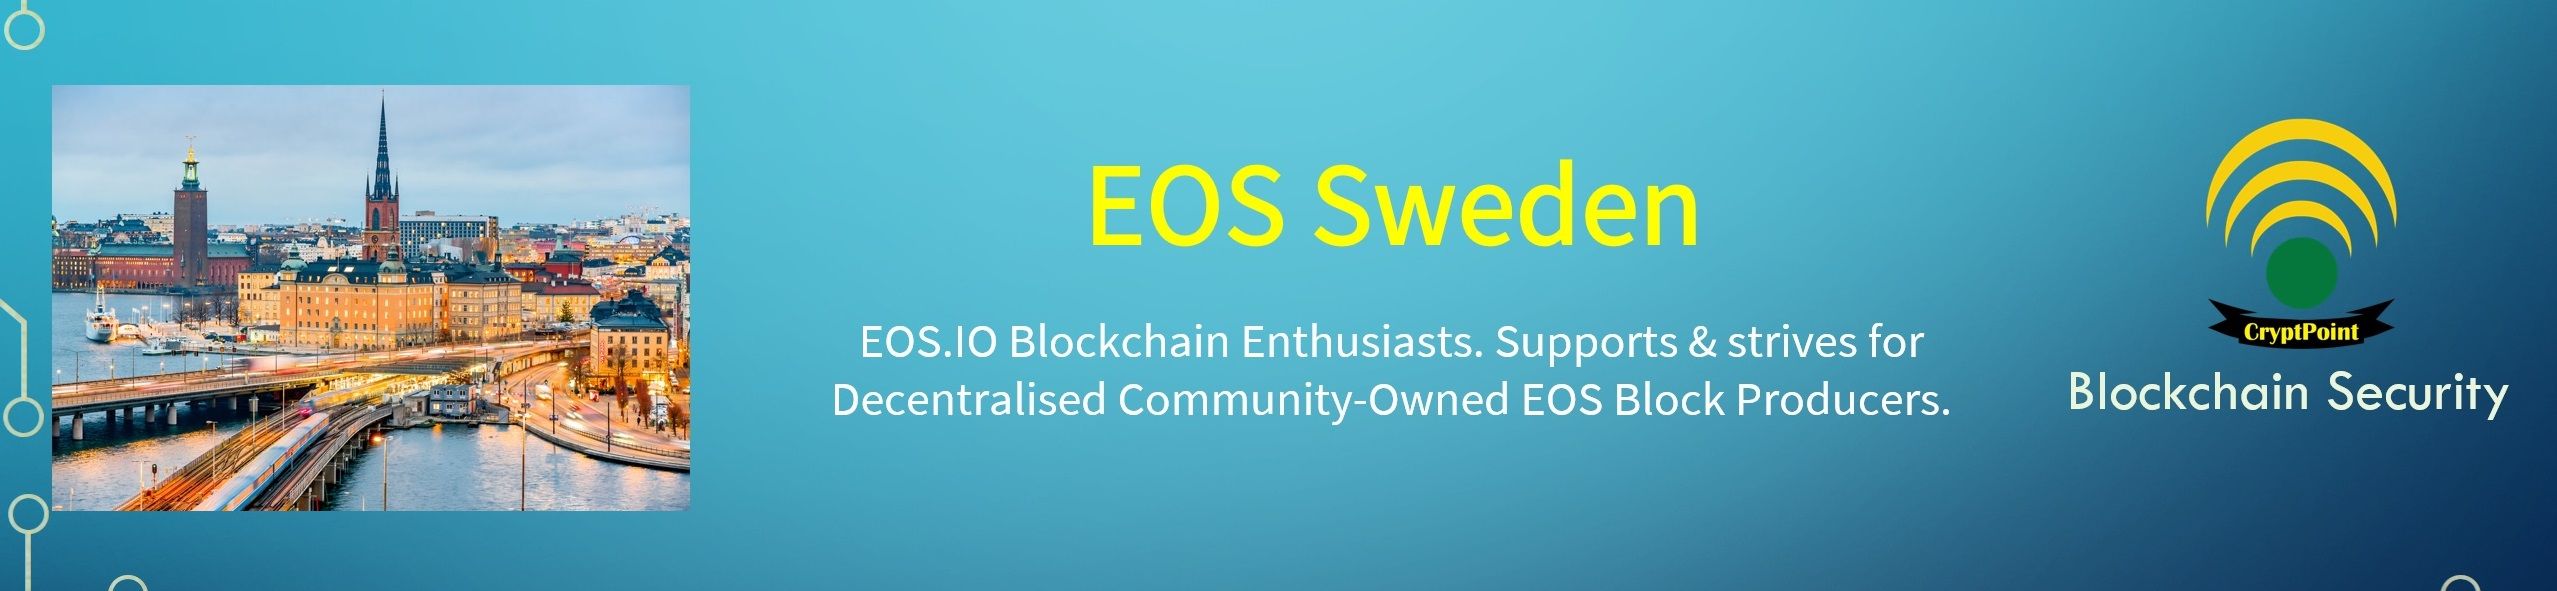 EOS_Sweden_505.jpg